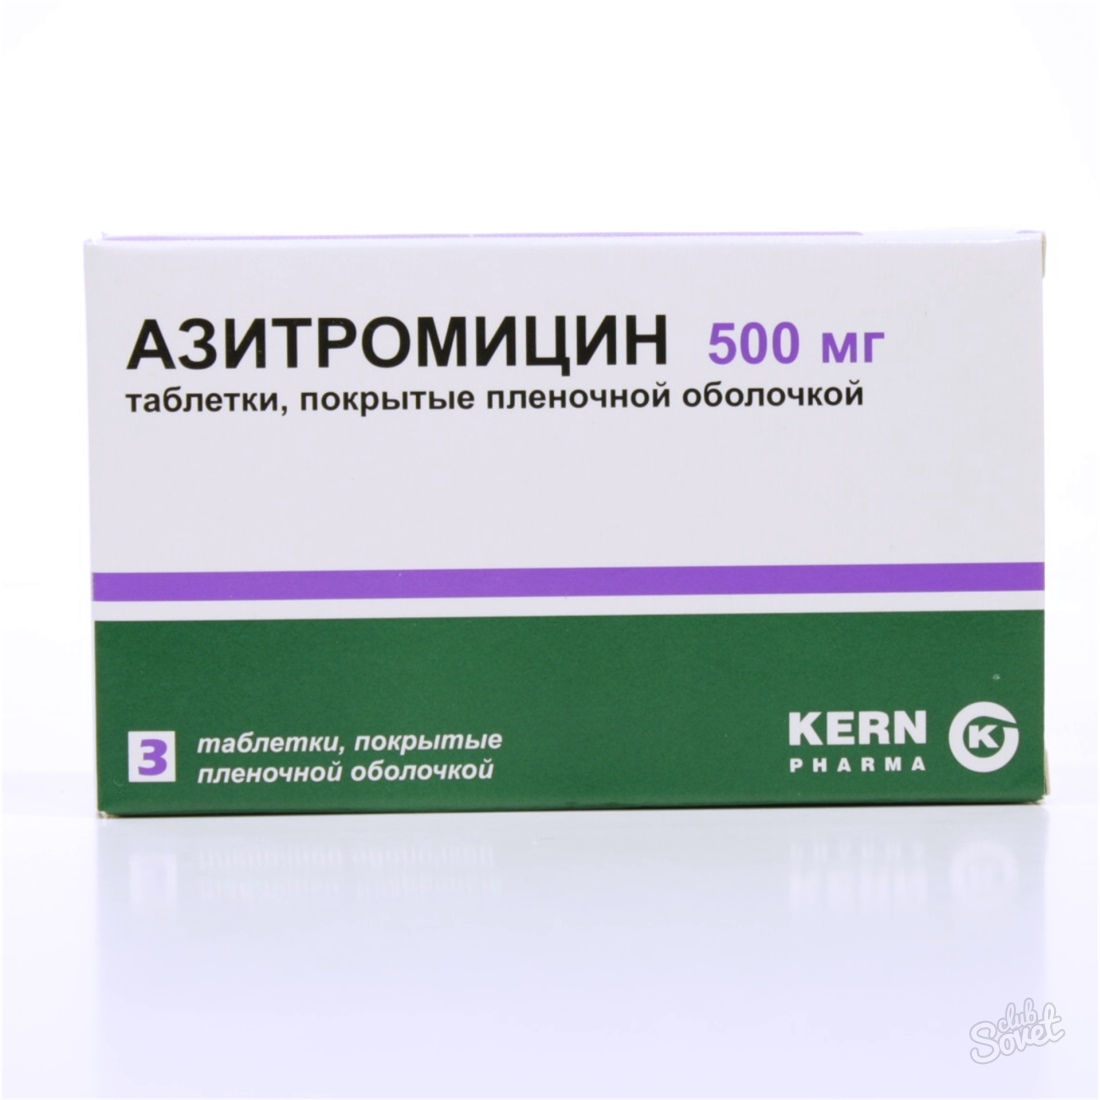 Три антибиотика. Антибиотик Азитромицин 500 мг. Азитромицин 500 таблетки антибиотики. Антибиотик Азитромицин 500 мг 3 таблетки. Азитромицин 3 табл 500мг.